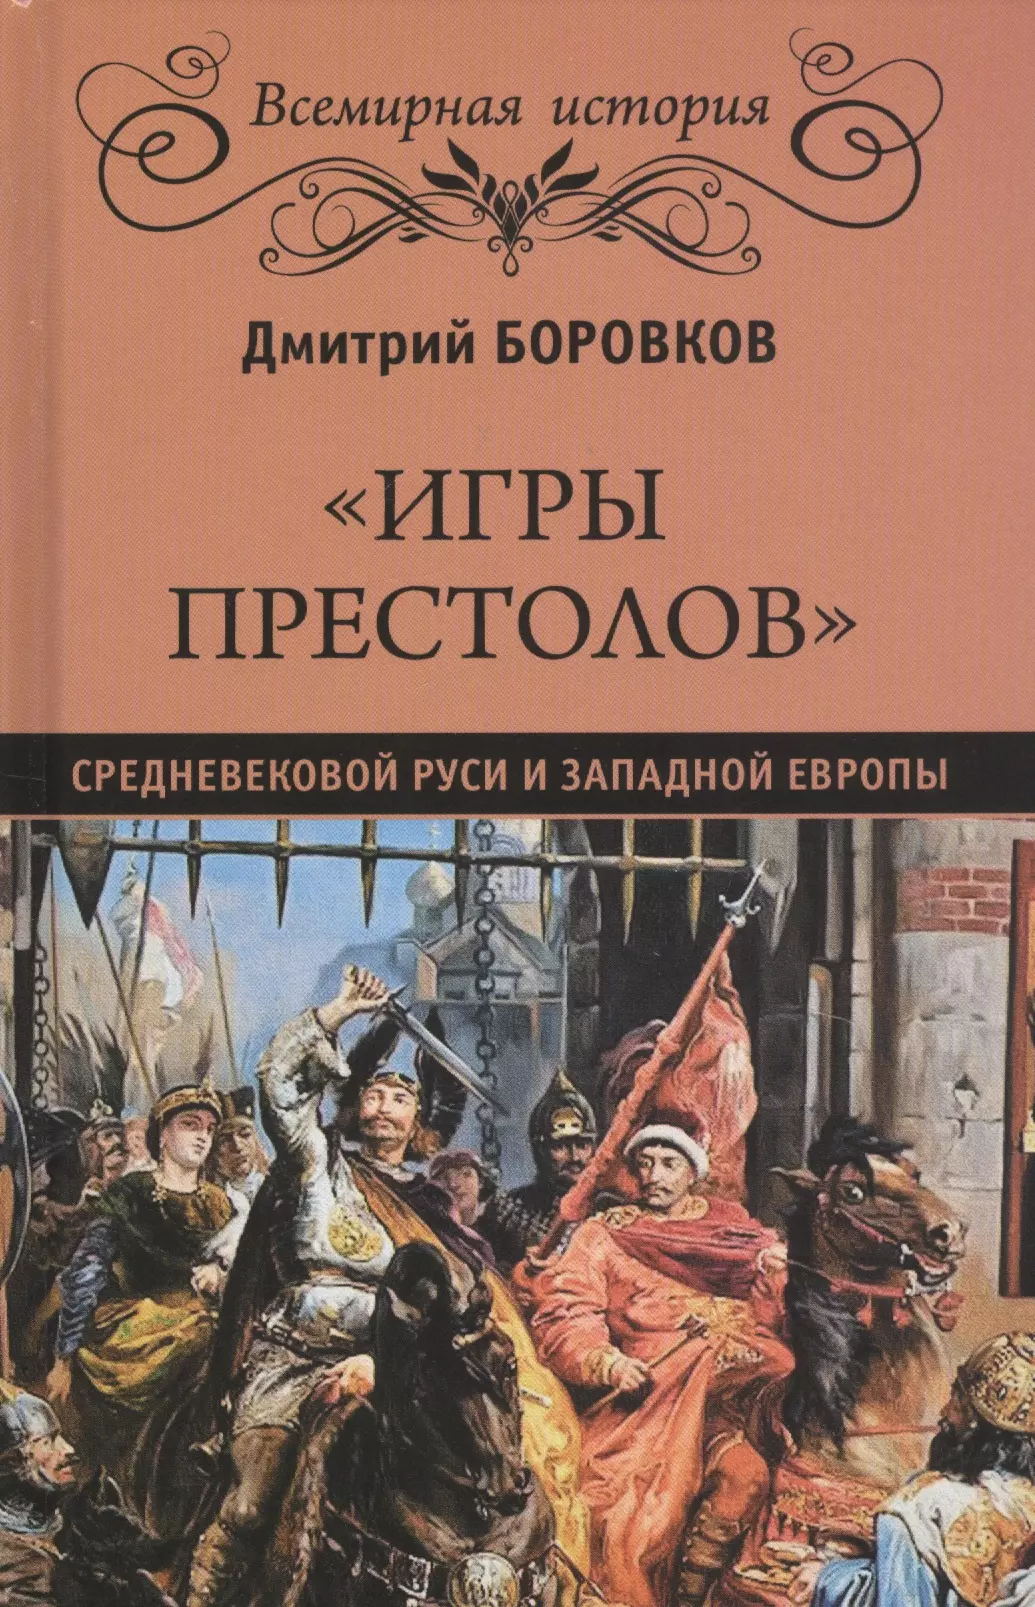 Боровков Дмитрий Александрович - "Игры престолов" средневековой Руси и Западной Европы